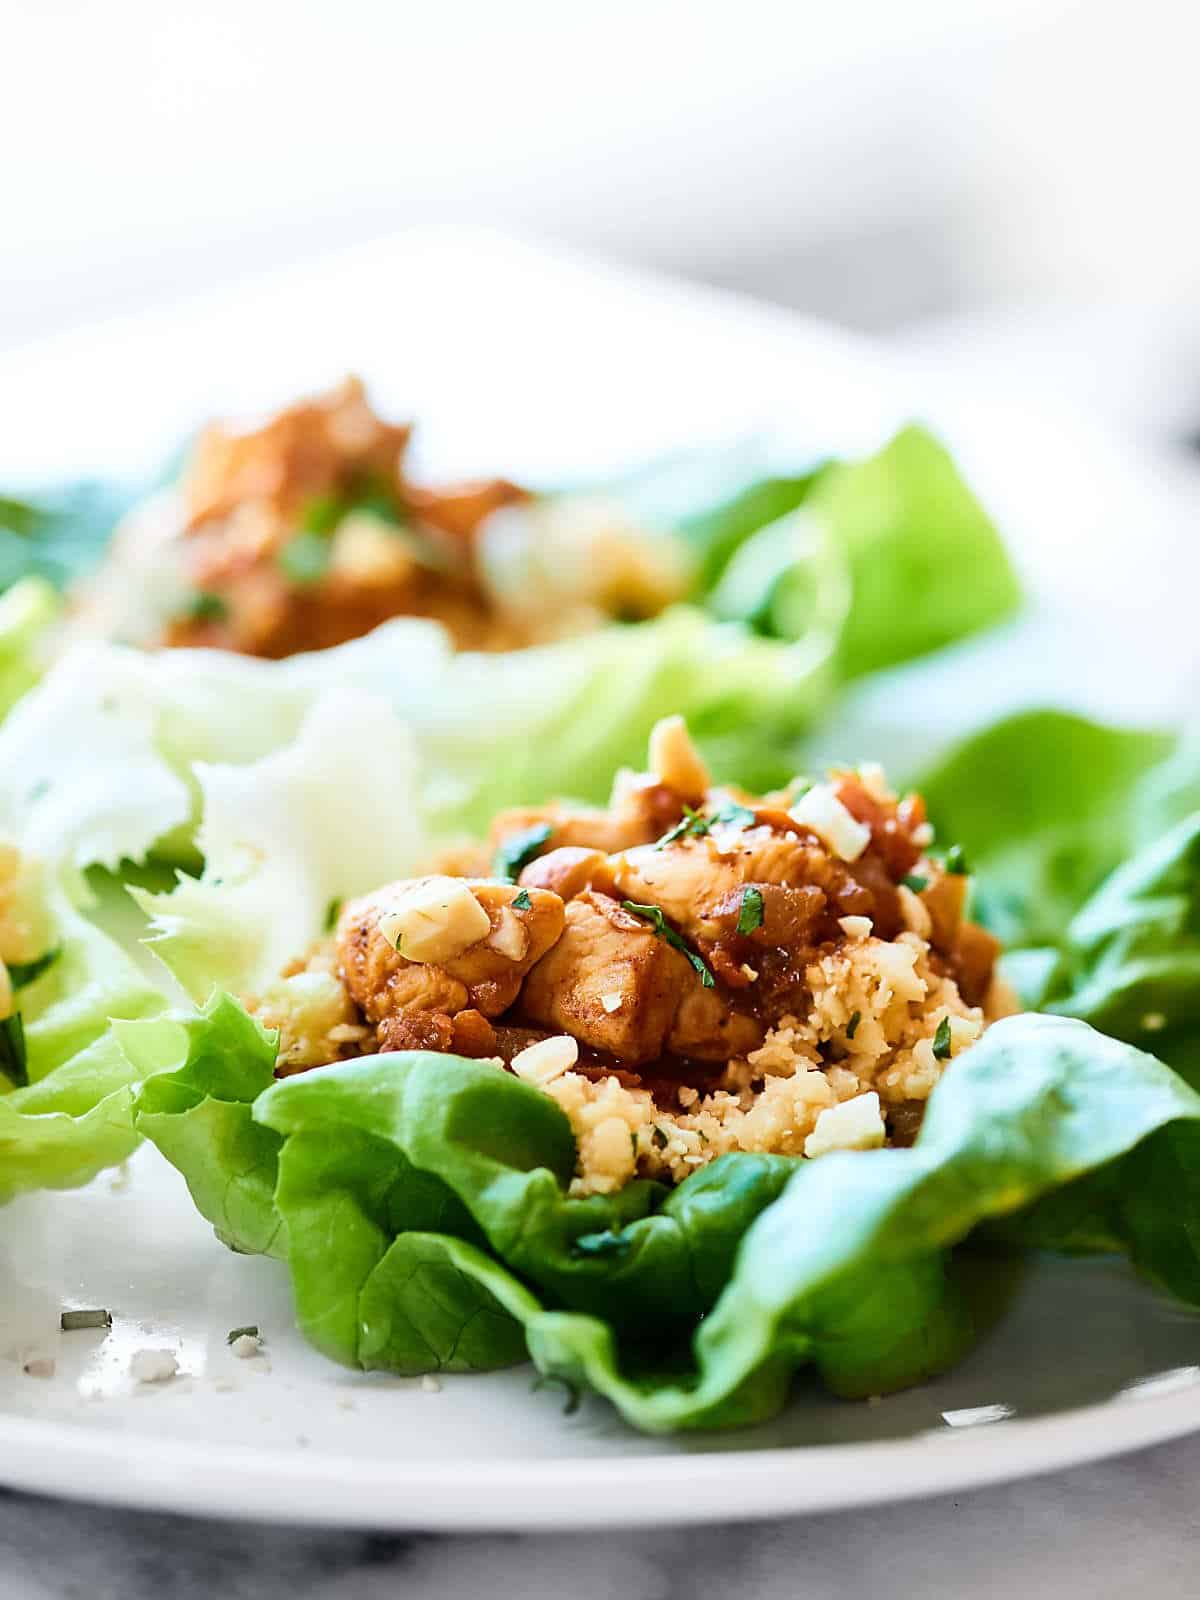 Healthy Asian Lettuce Wraps Recipe - w/ Chicken